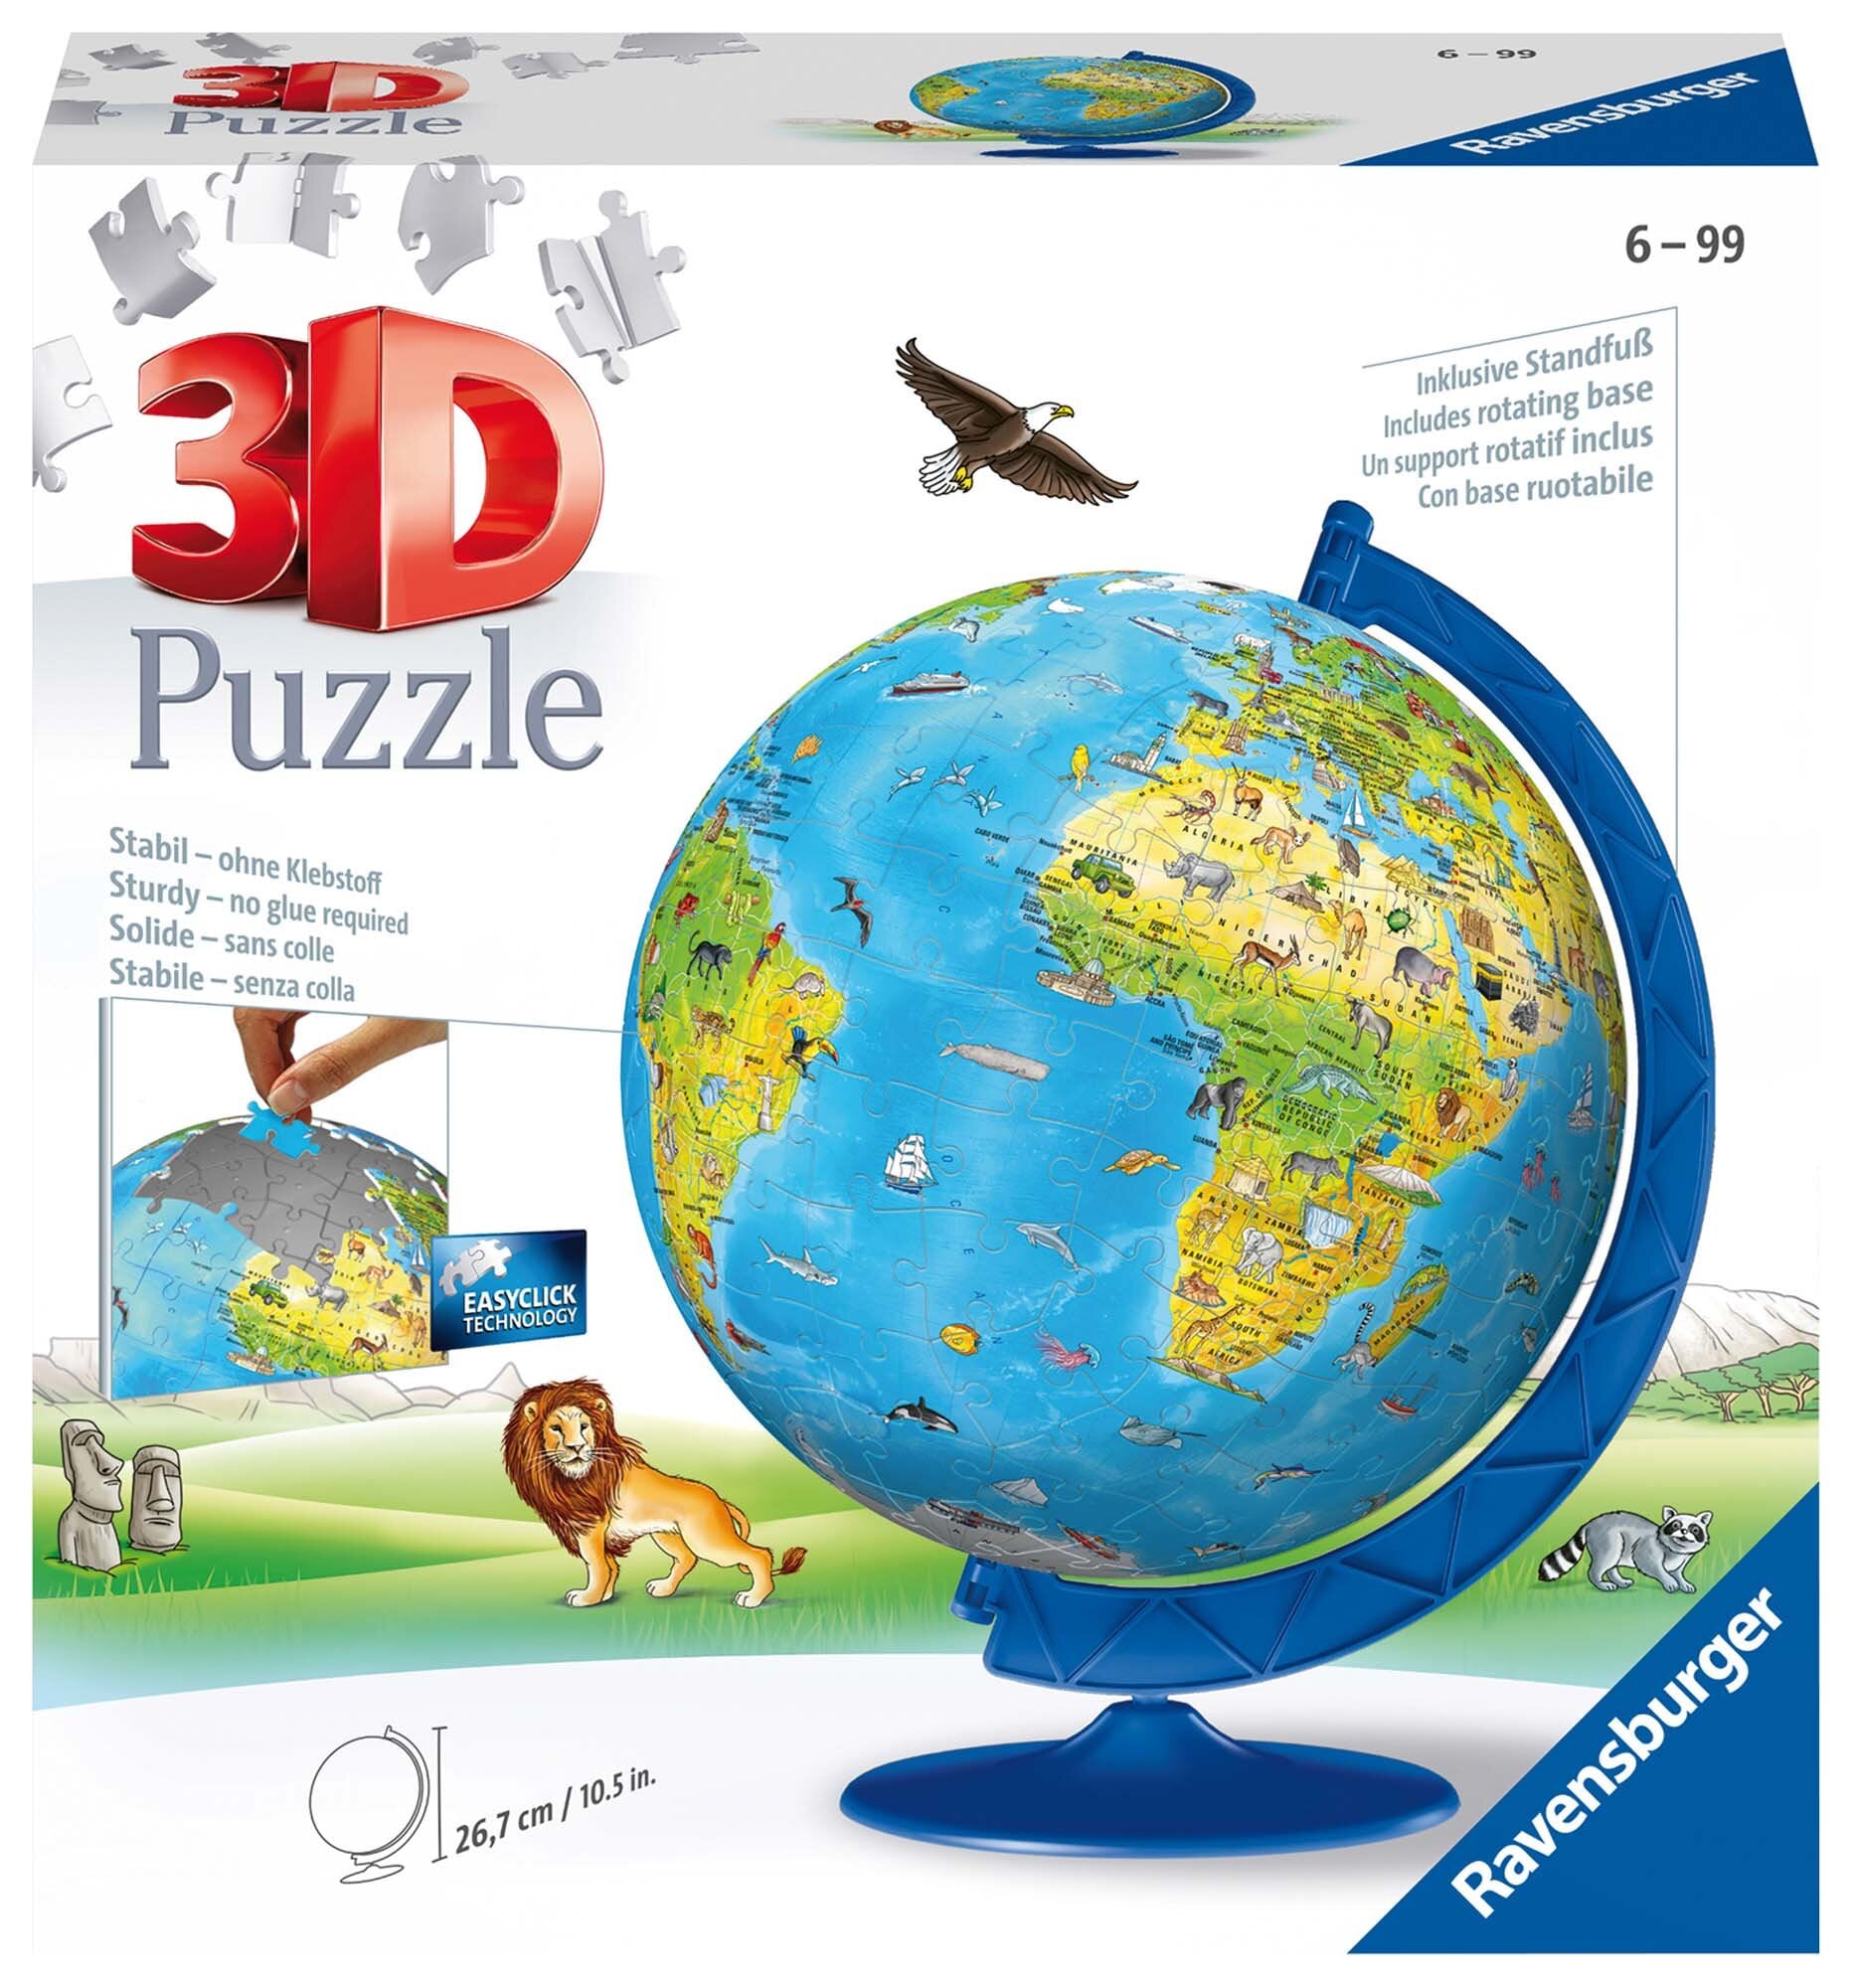 Ravensburger 3D Puzzle - 3D Globus 108 Teile